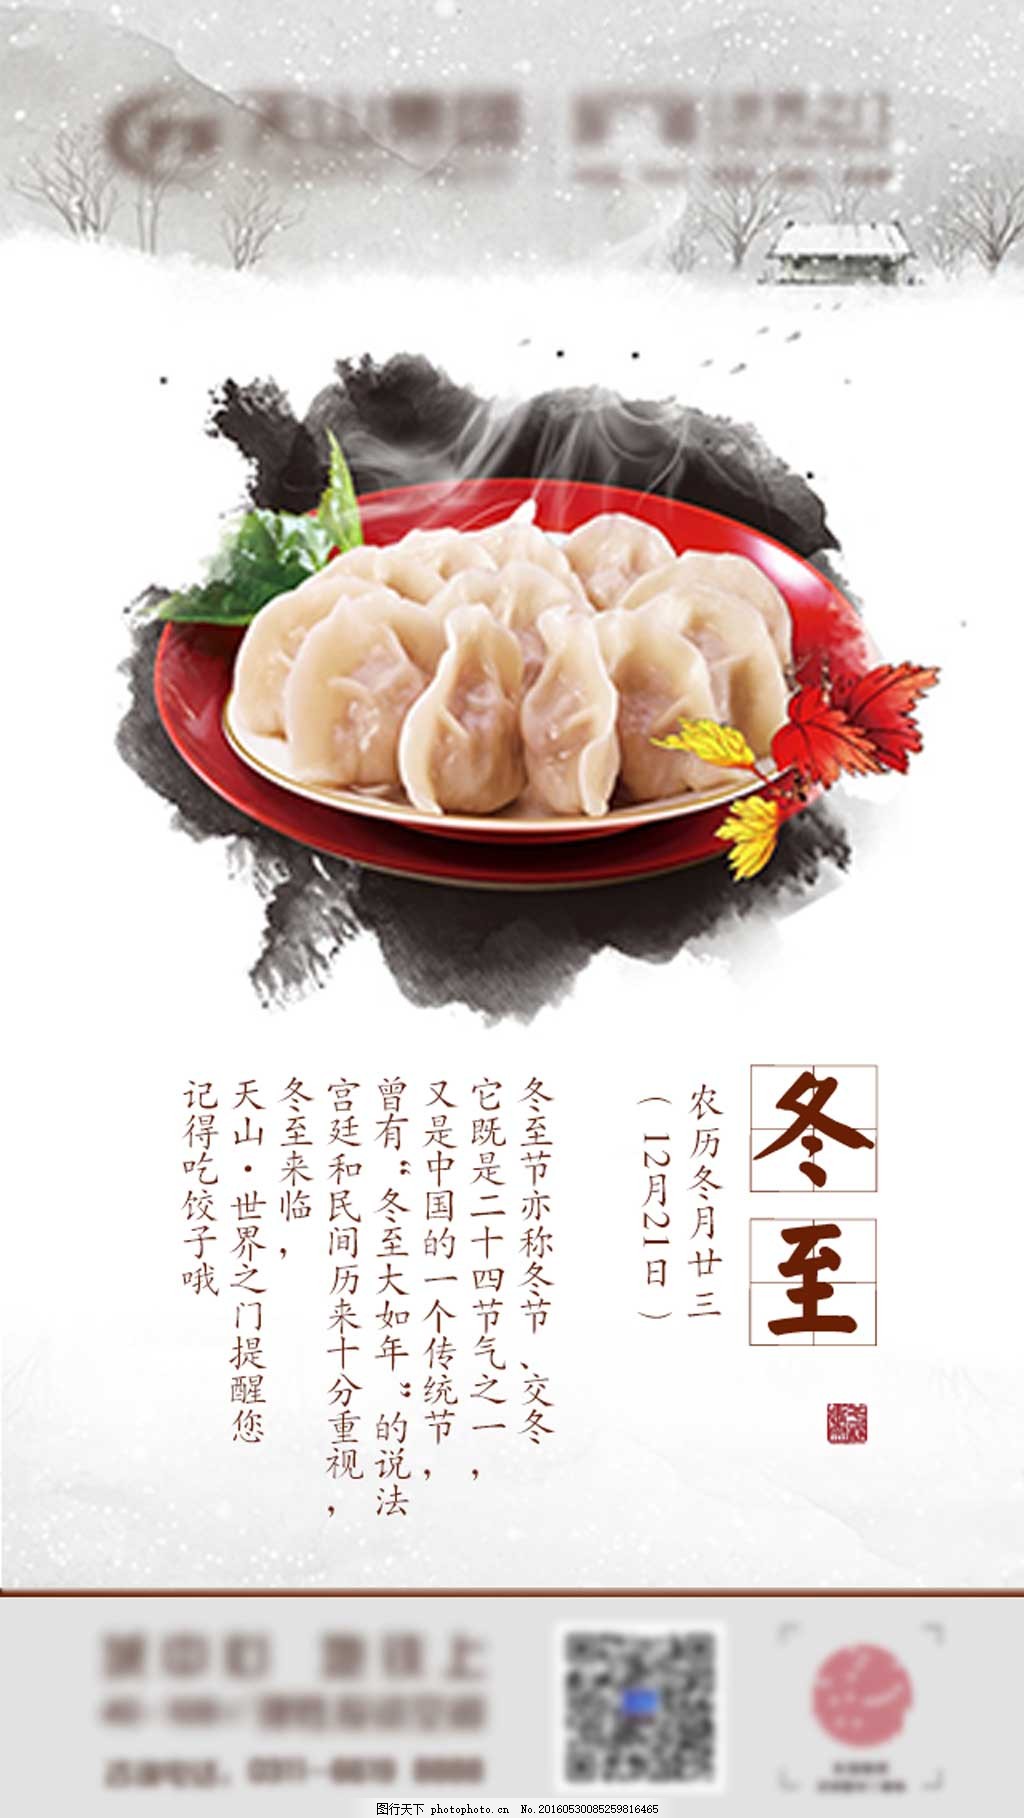 冬至吃饺子的中国风节气图片,冬至大于年-图行